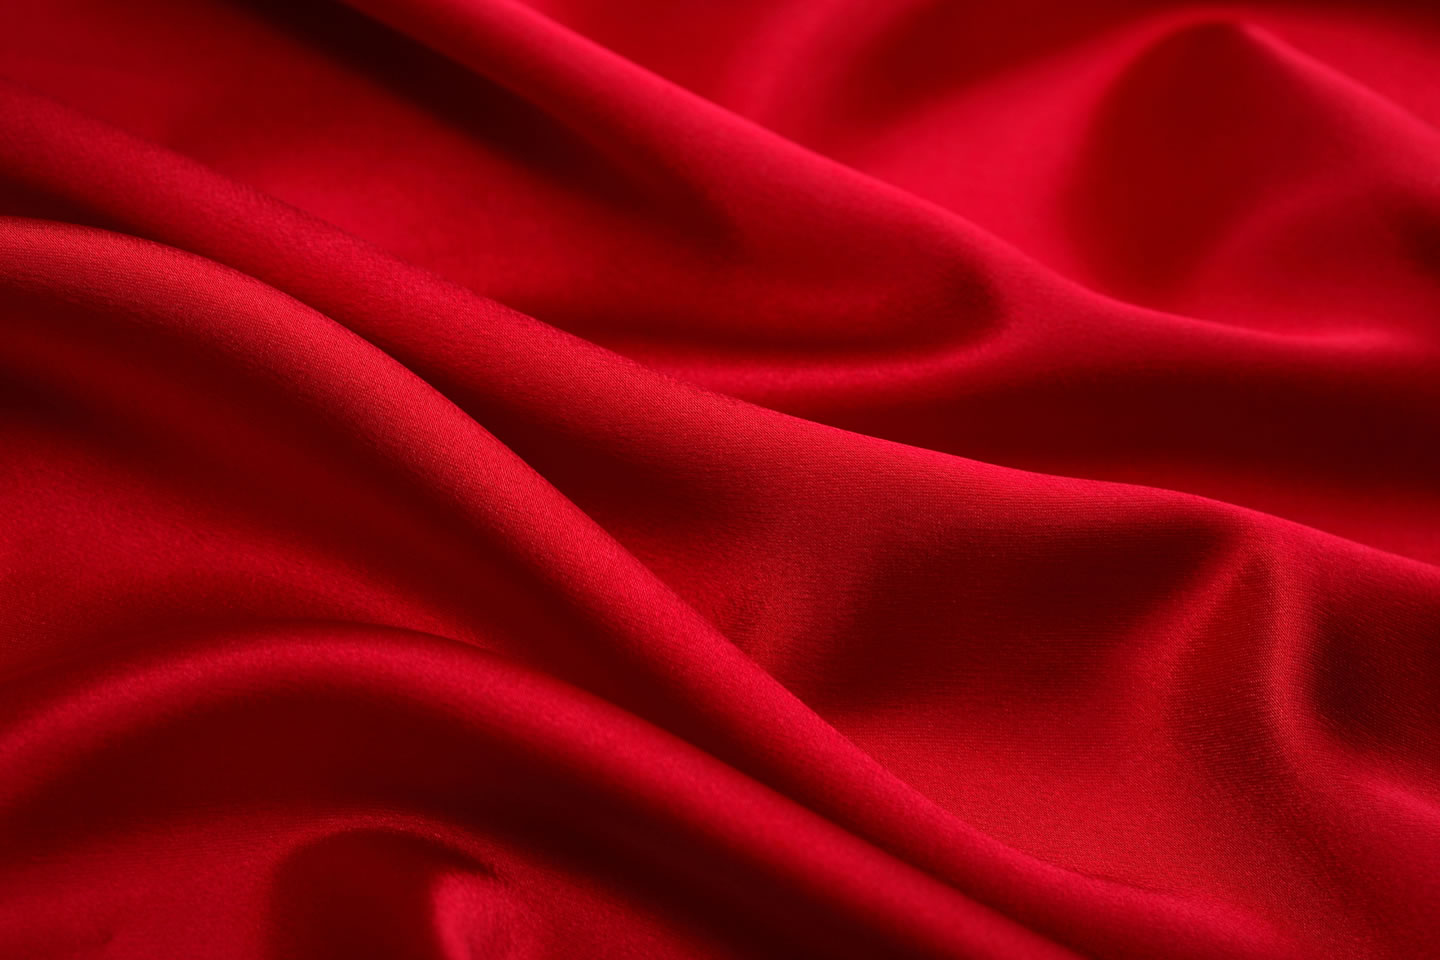 红色绸缎布料图片,丝绸质感红色布料图片素材